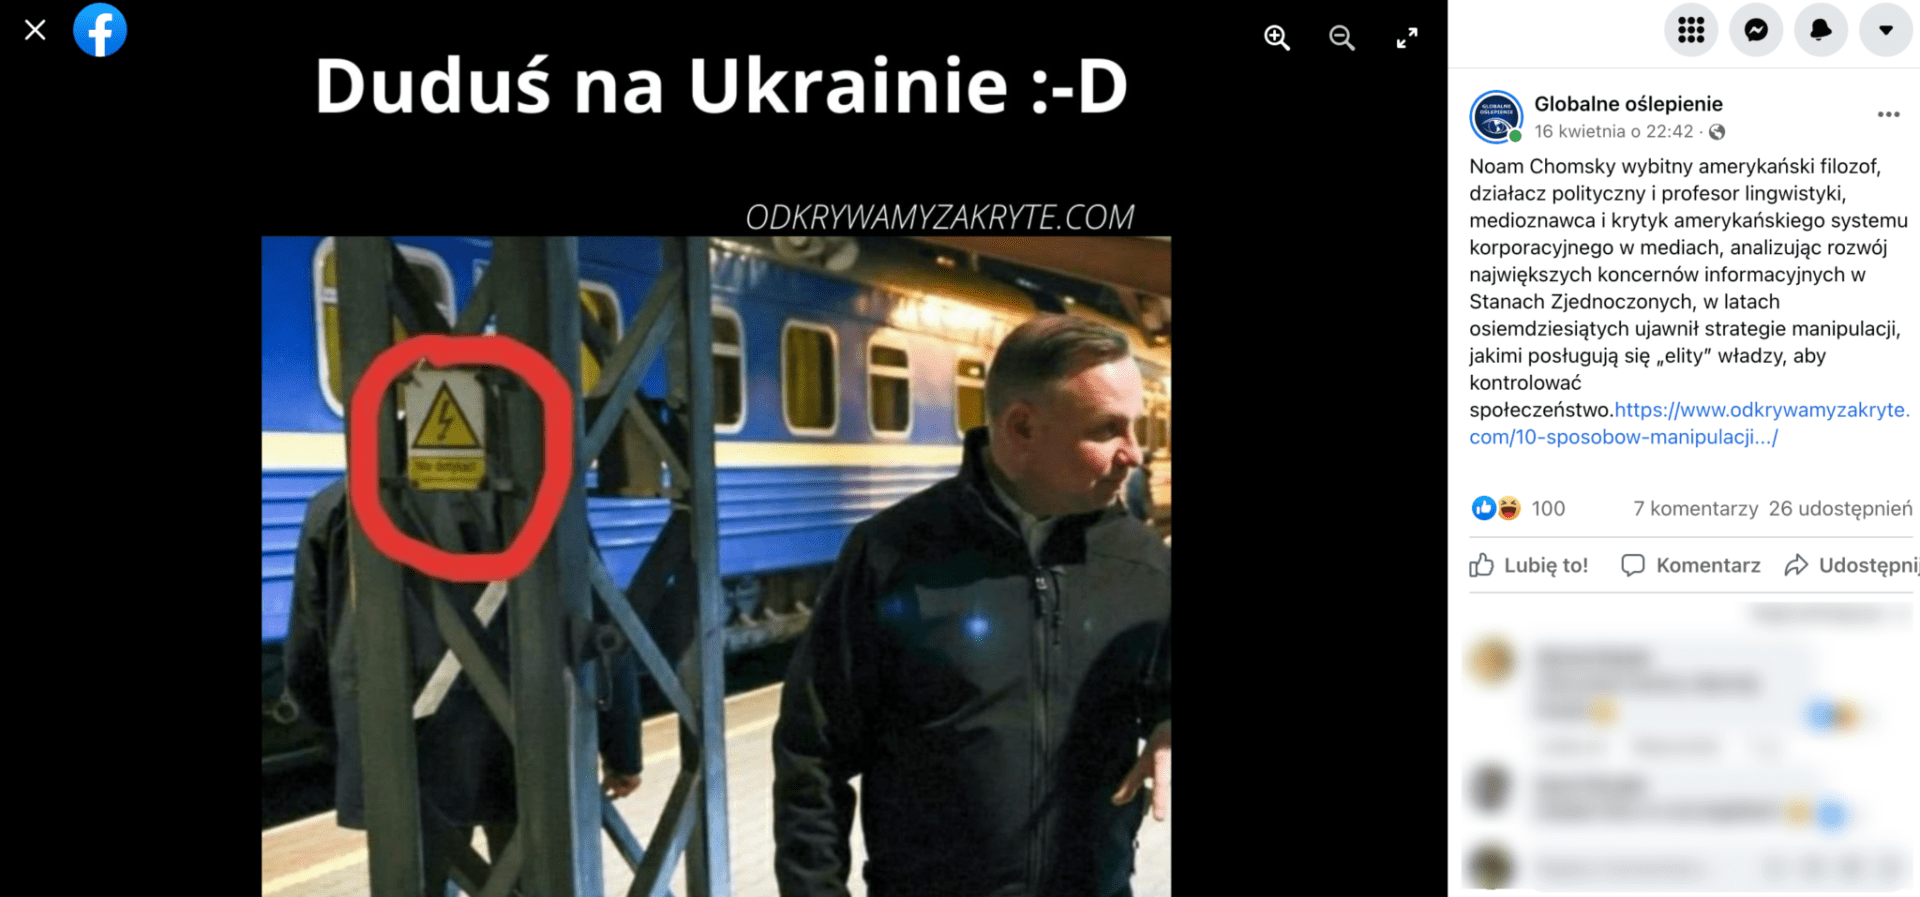 Zrzut ekranu z posta na Facebooku, w którym ironicznie stwierdzono, że Andrzej Duda nie był w Kijowie podczas wojny.